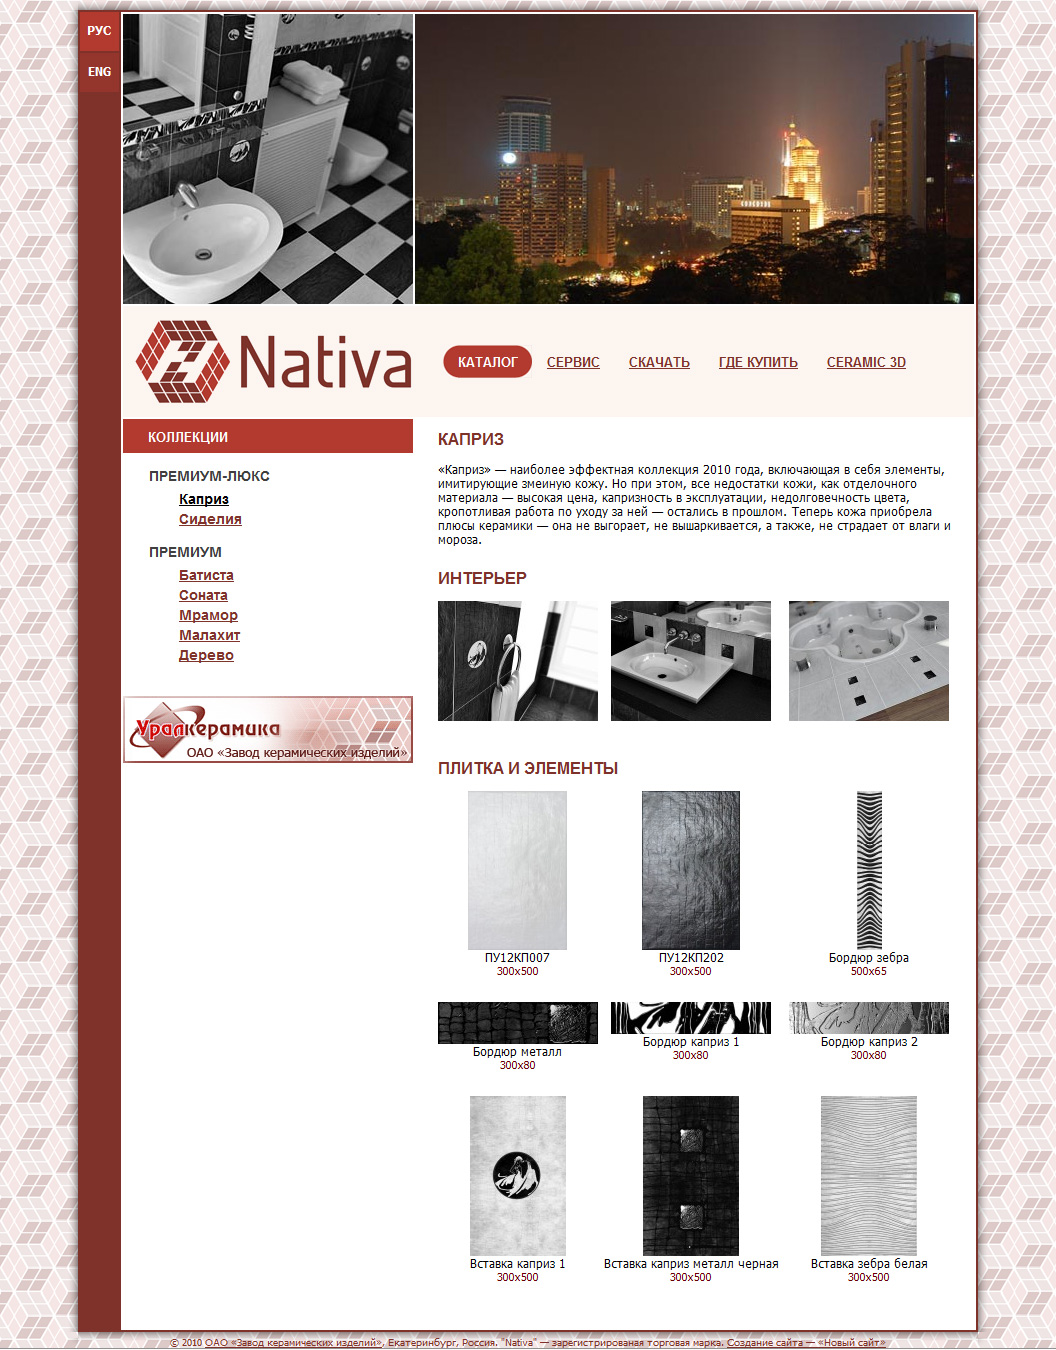 Nativa - керамическая плитка